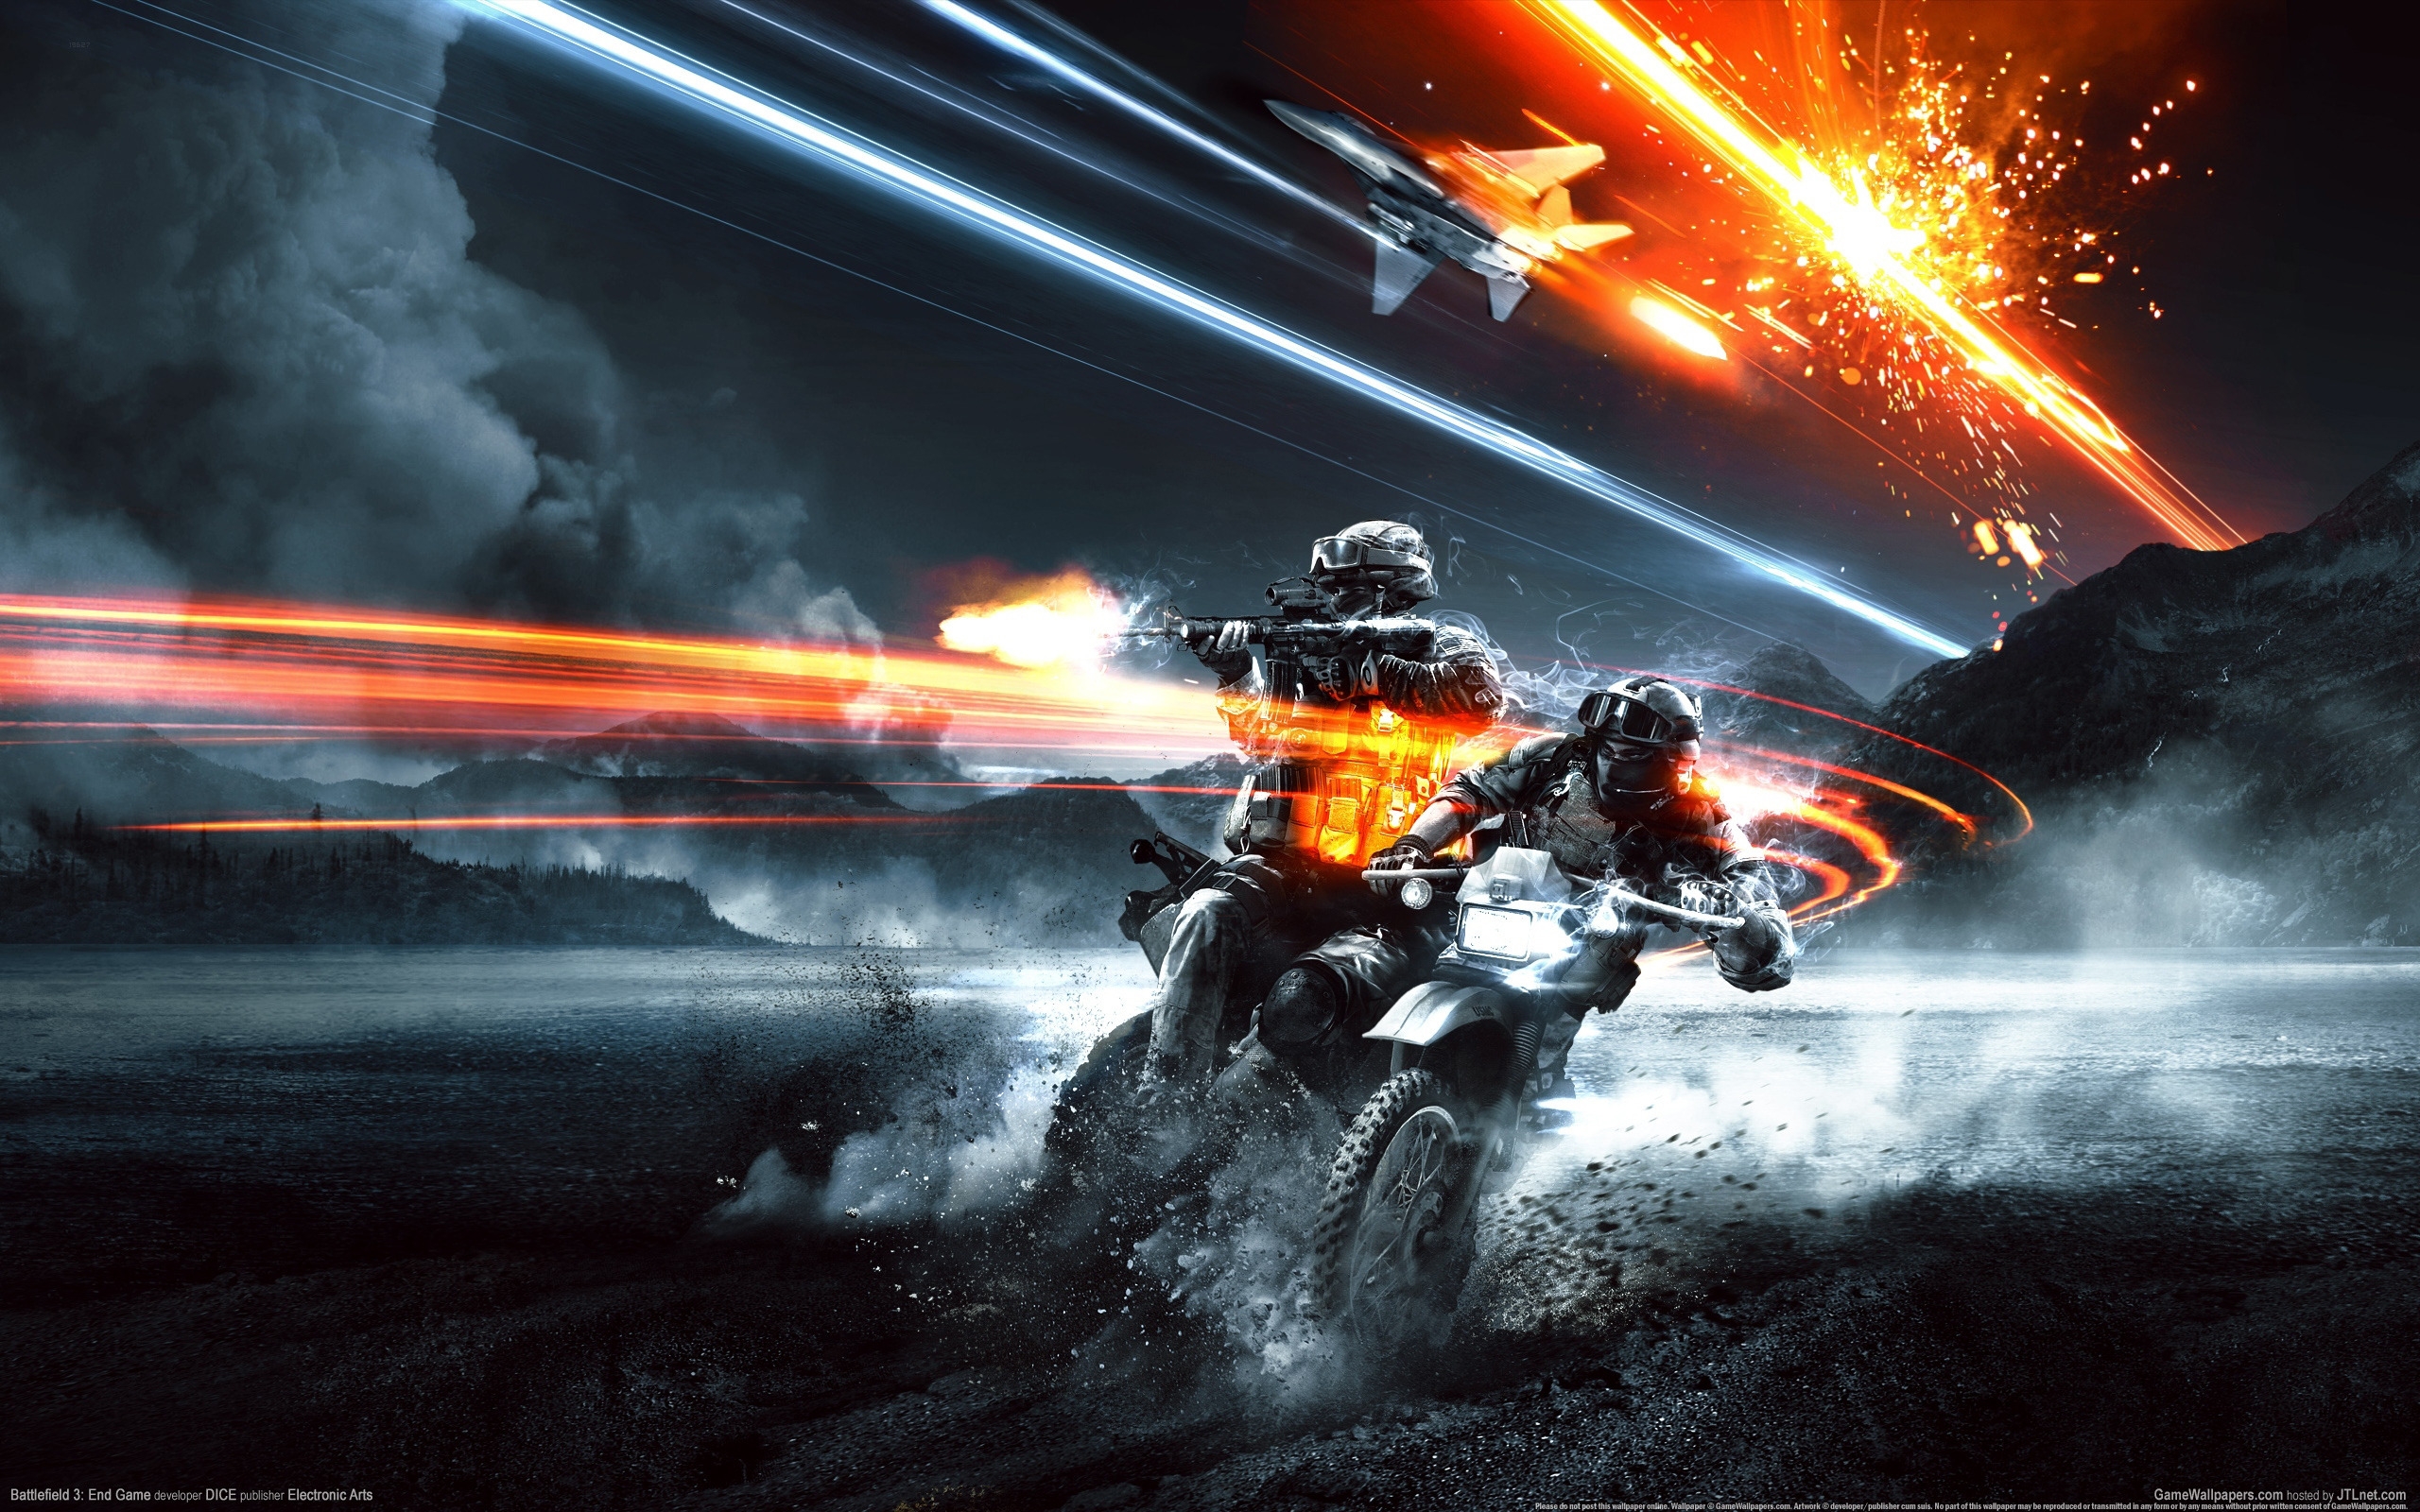 Battlefield 4 for 2560 x 1600 widescreen resolution